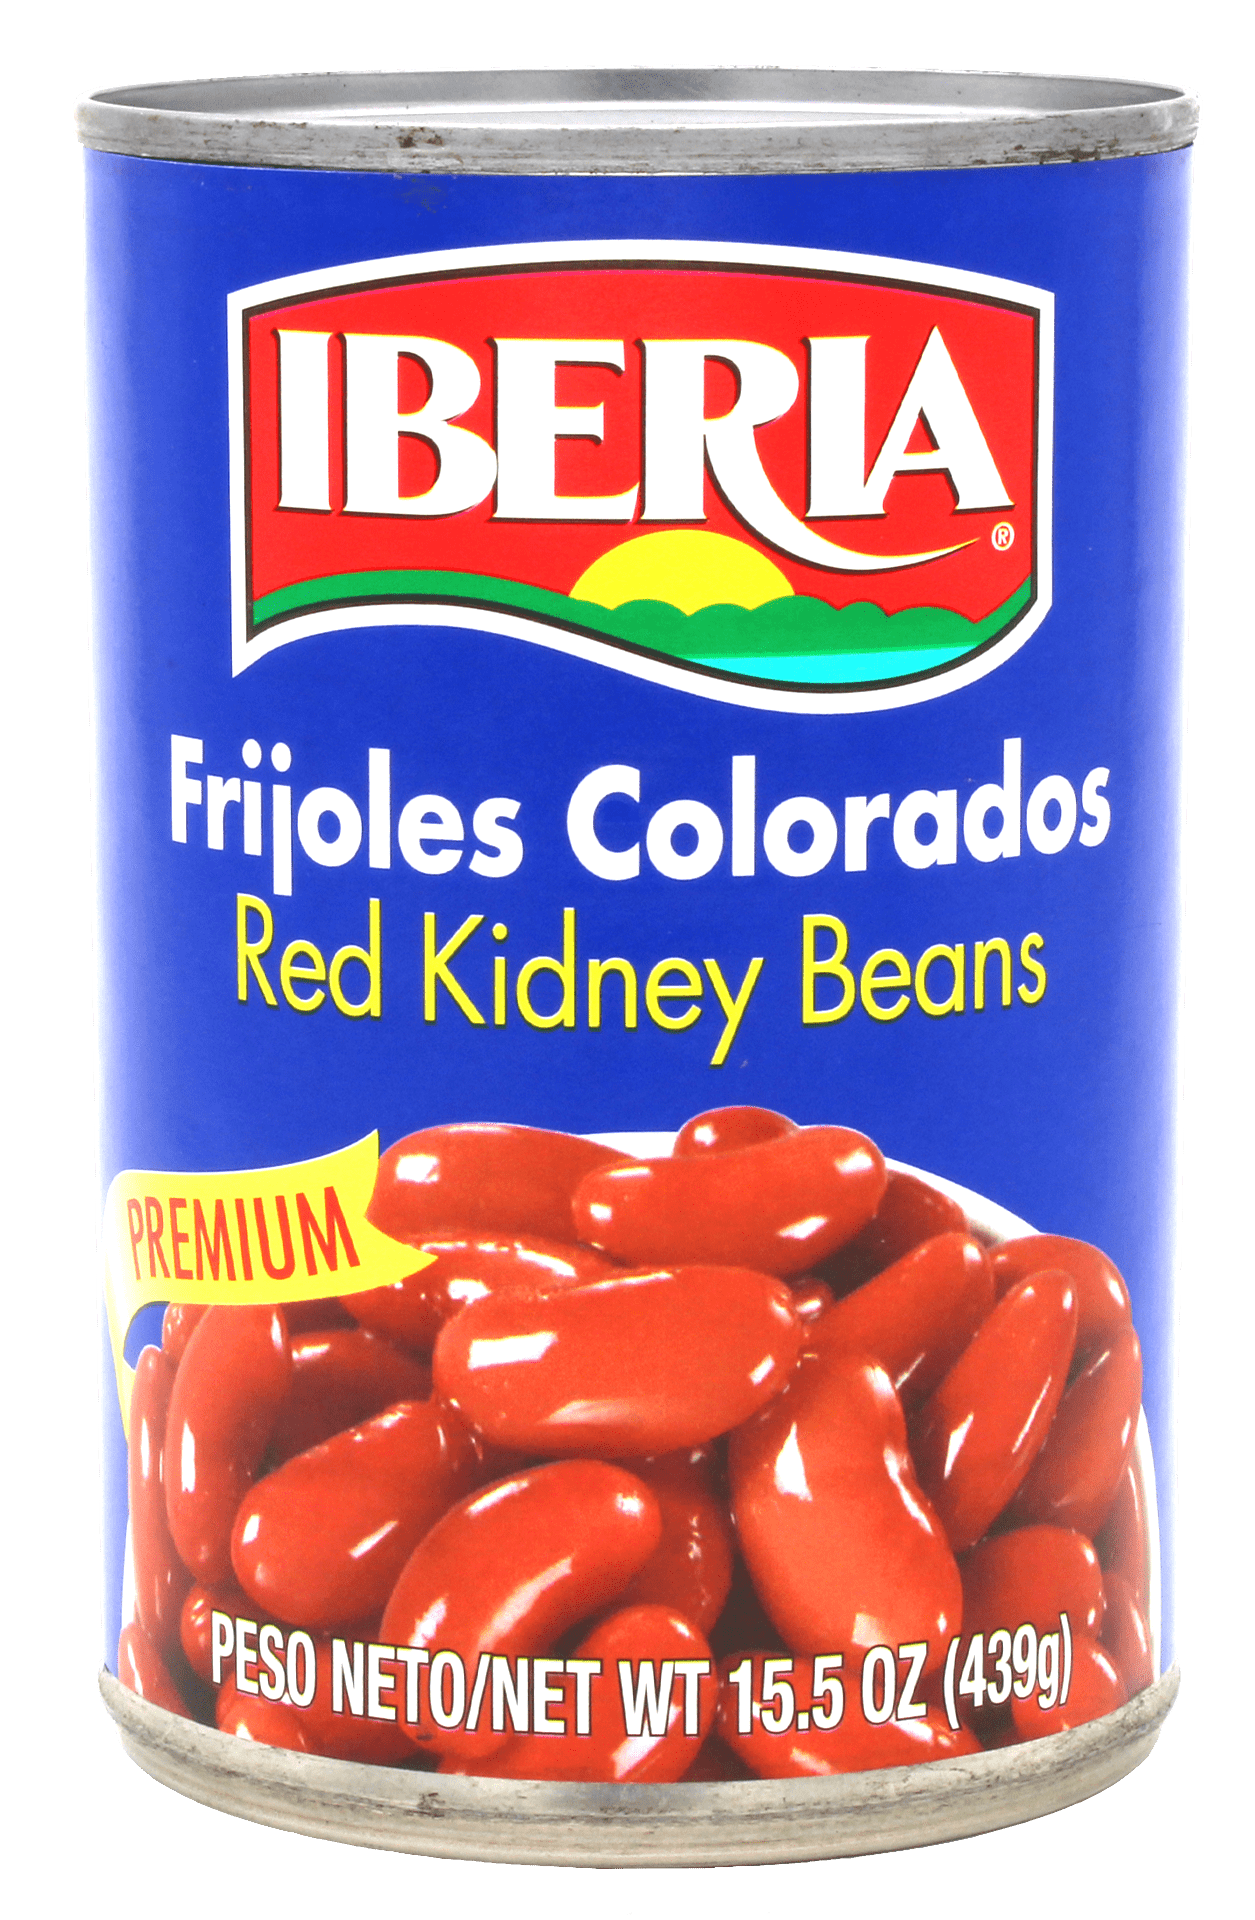 Iberia Red Kidney Beans, 15.5 Oz